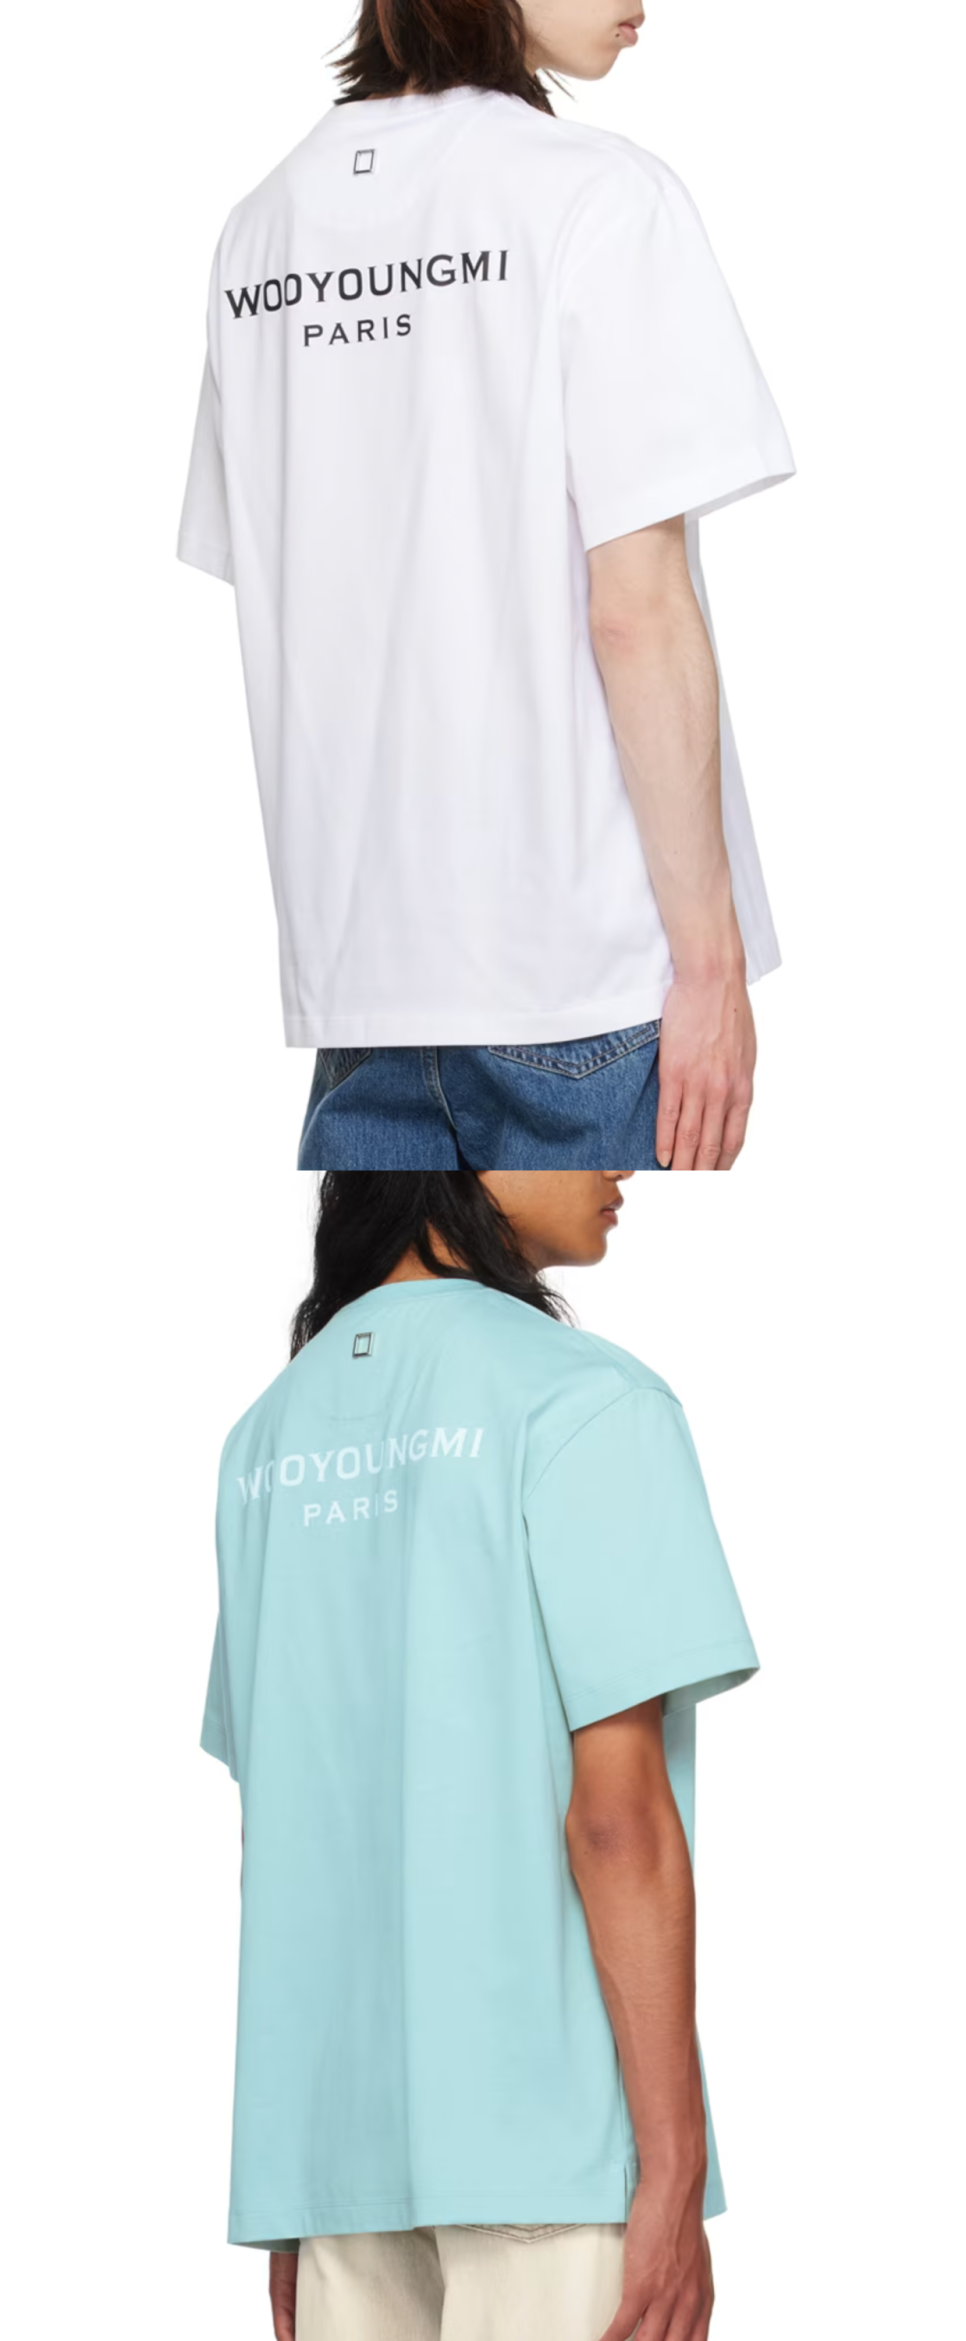 우영미 직구 반팔티 로고 티셔츠 모자 벨트 70% 할인 시작!